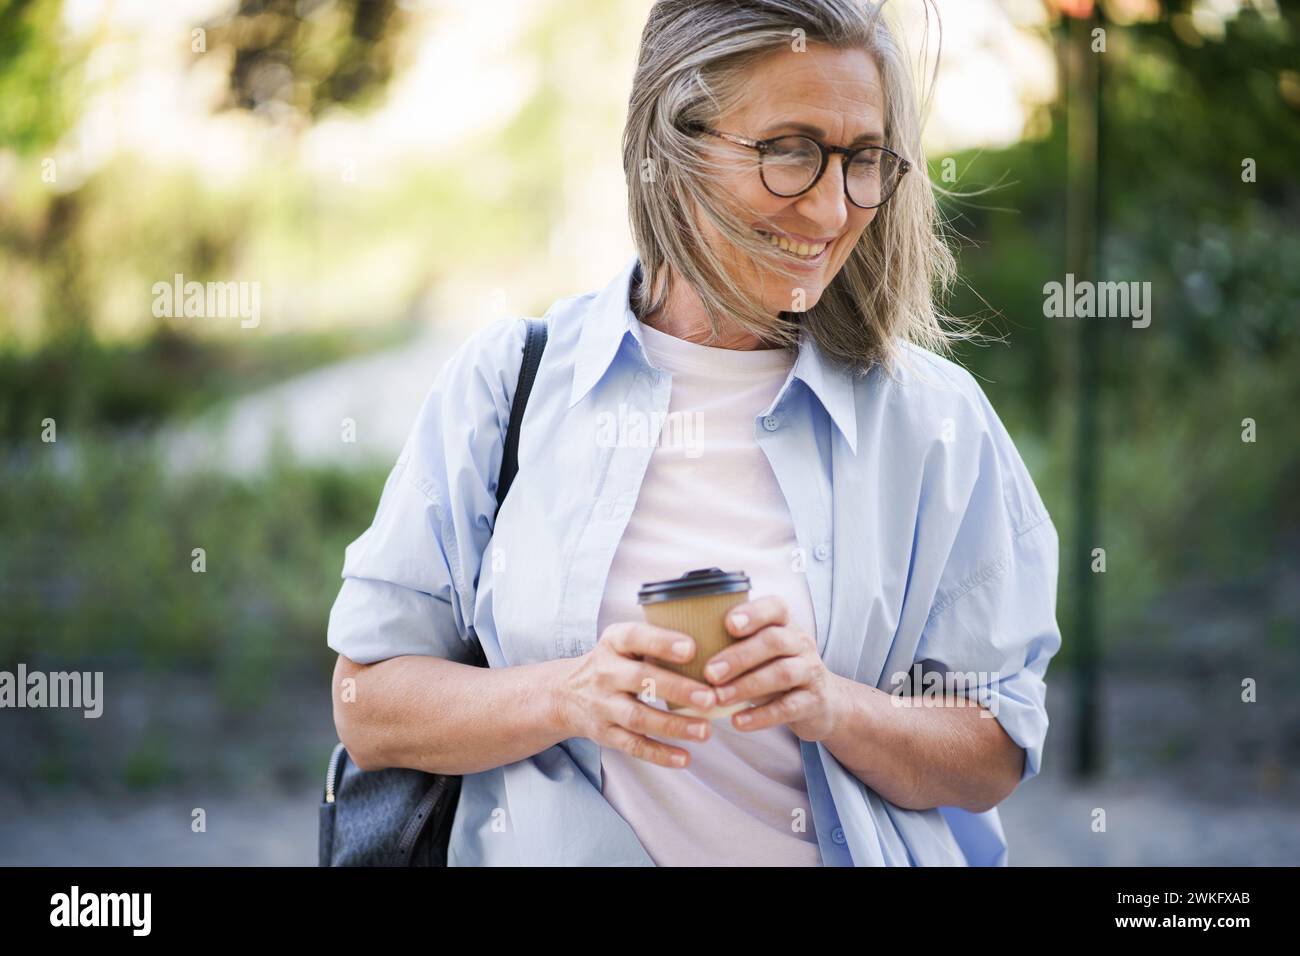 Eine Frau, die eine Brille trägt, konzentriert sich auf ihre Tasse Kaffee, absorbiert in das, was sie trinkt. Stockfoto